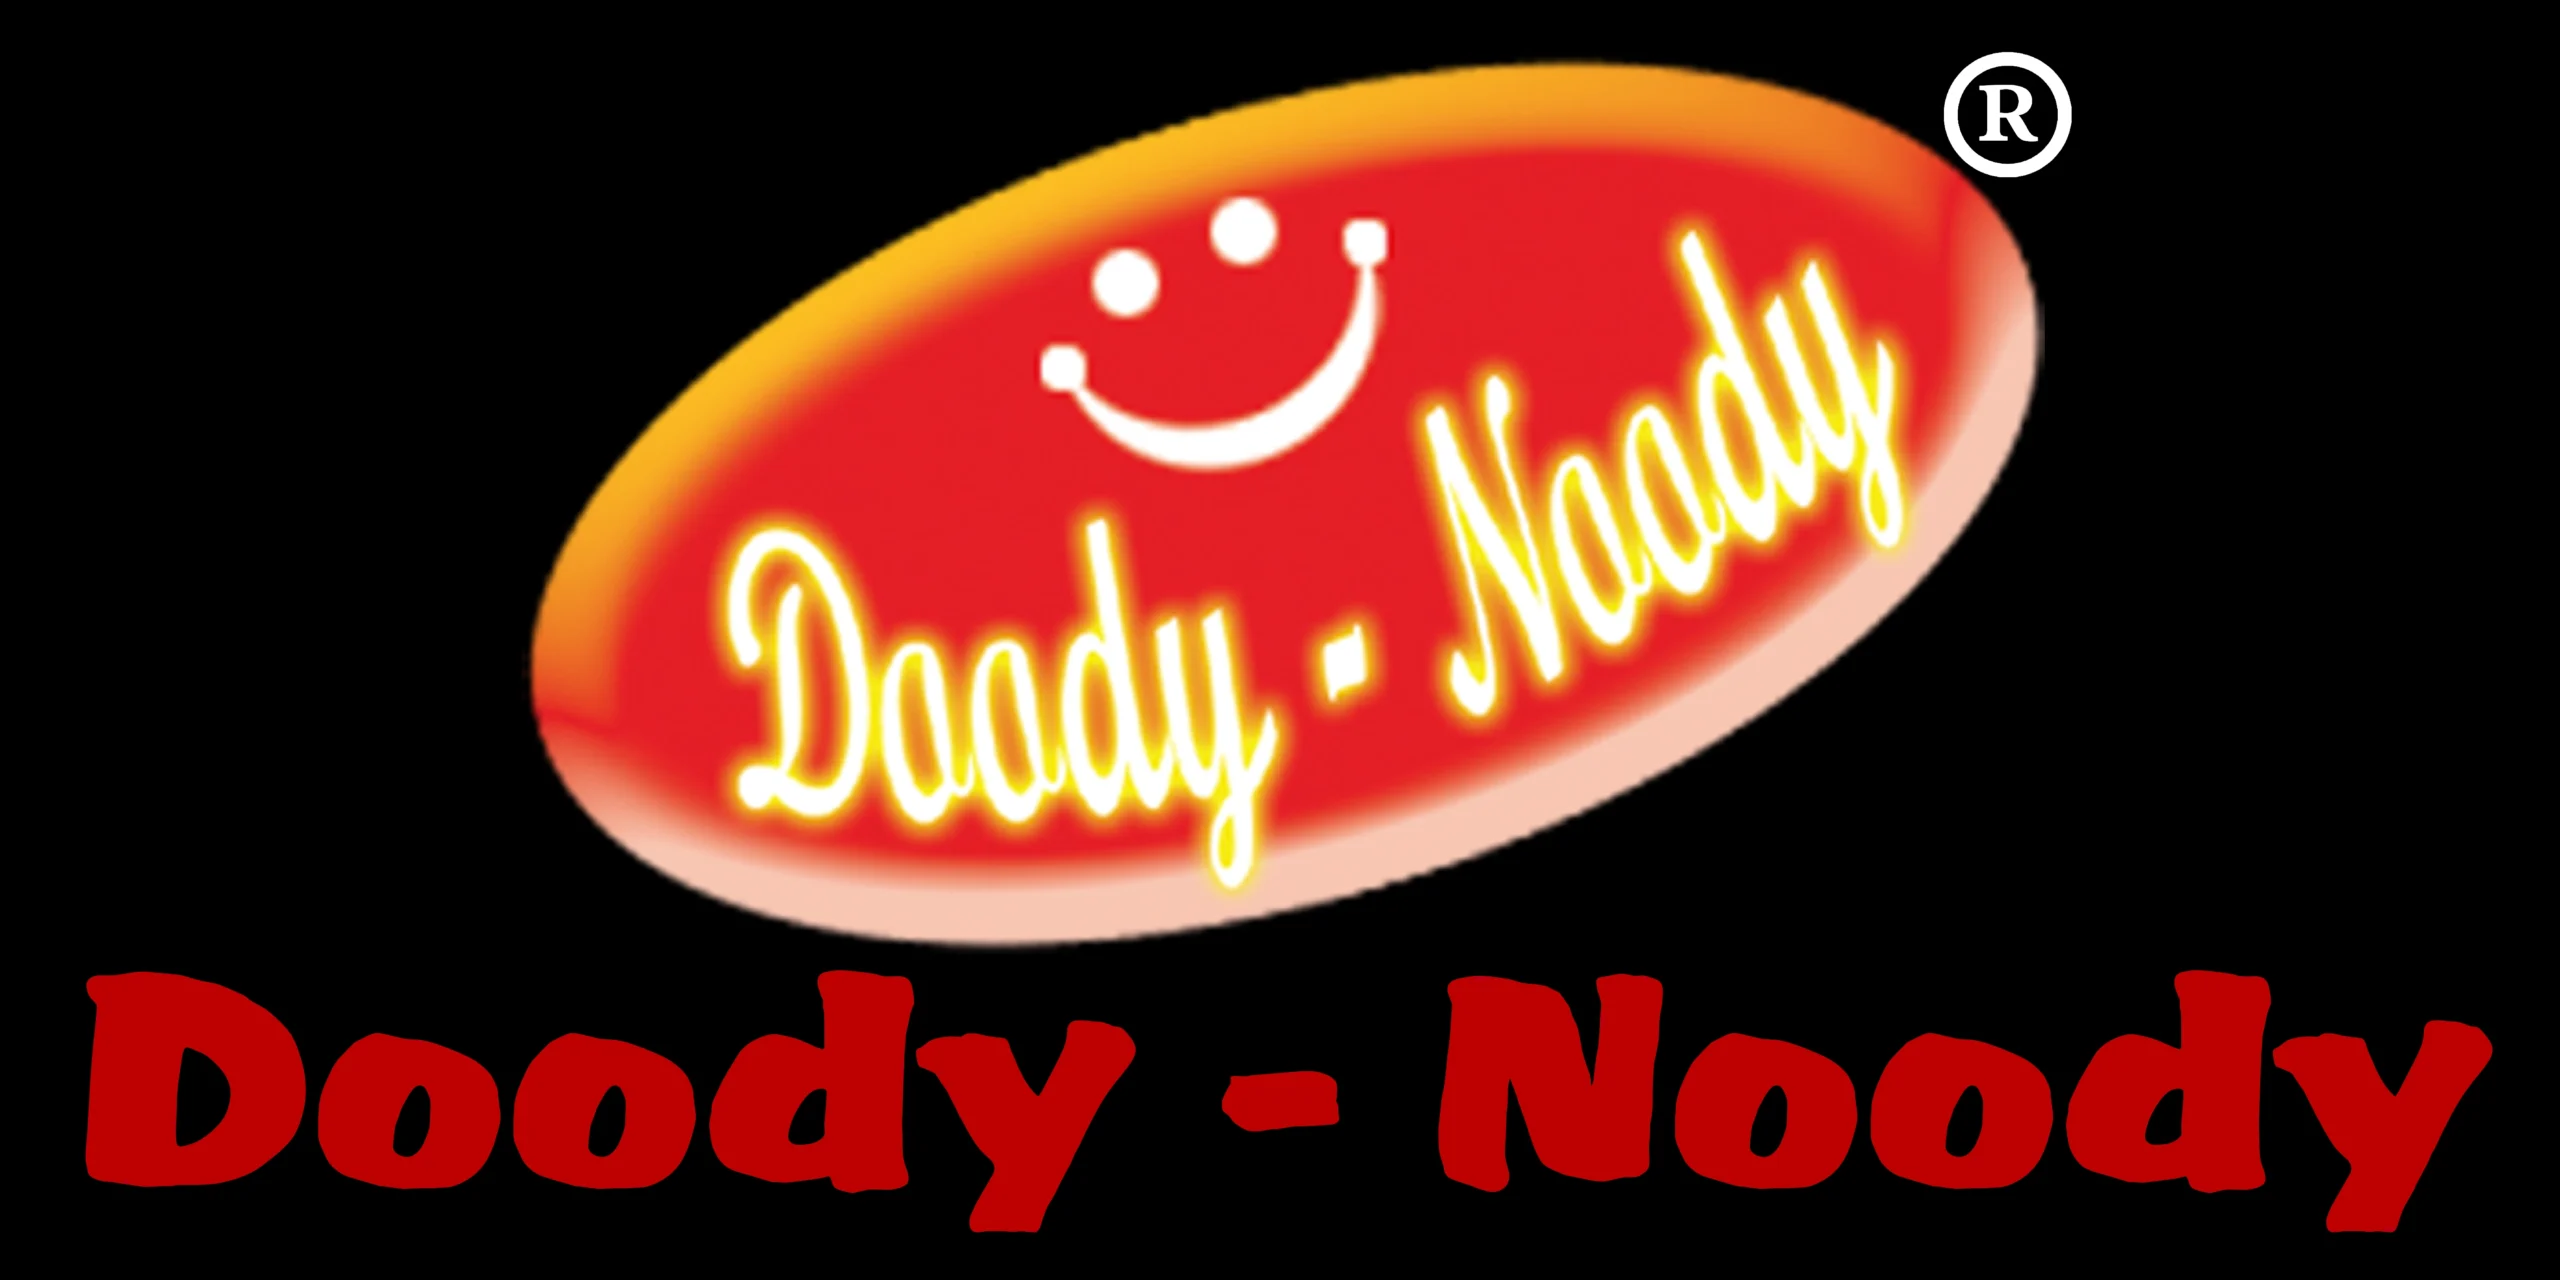 Doody-Noody